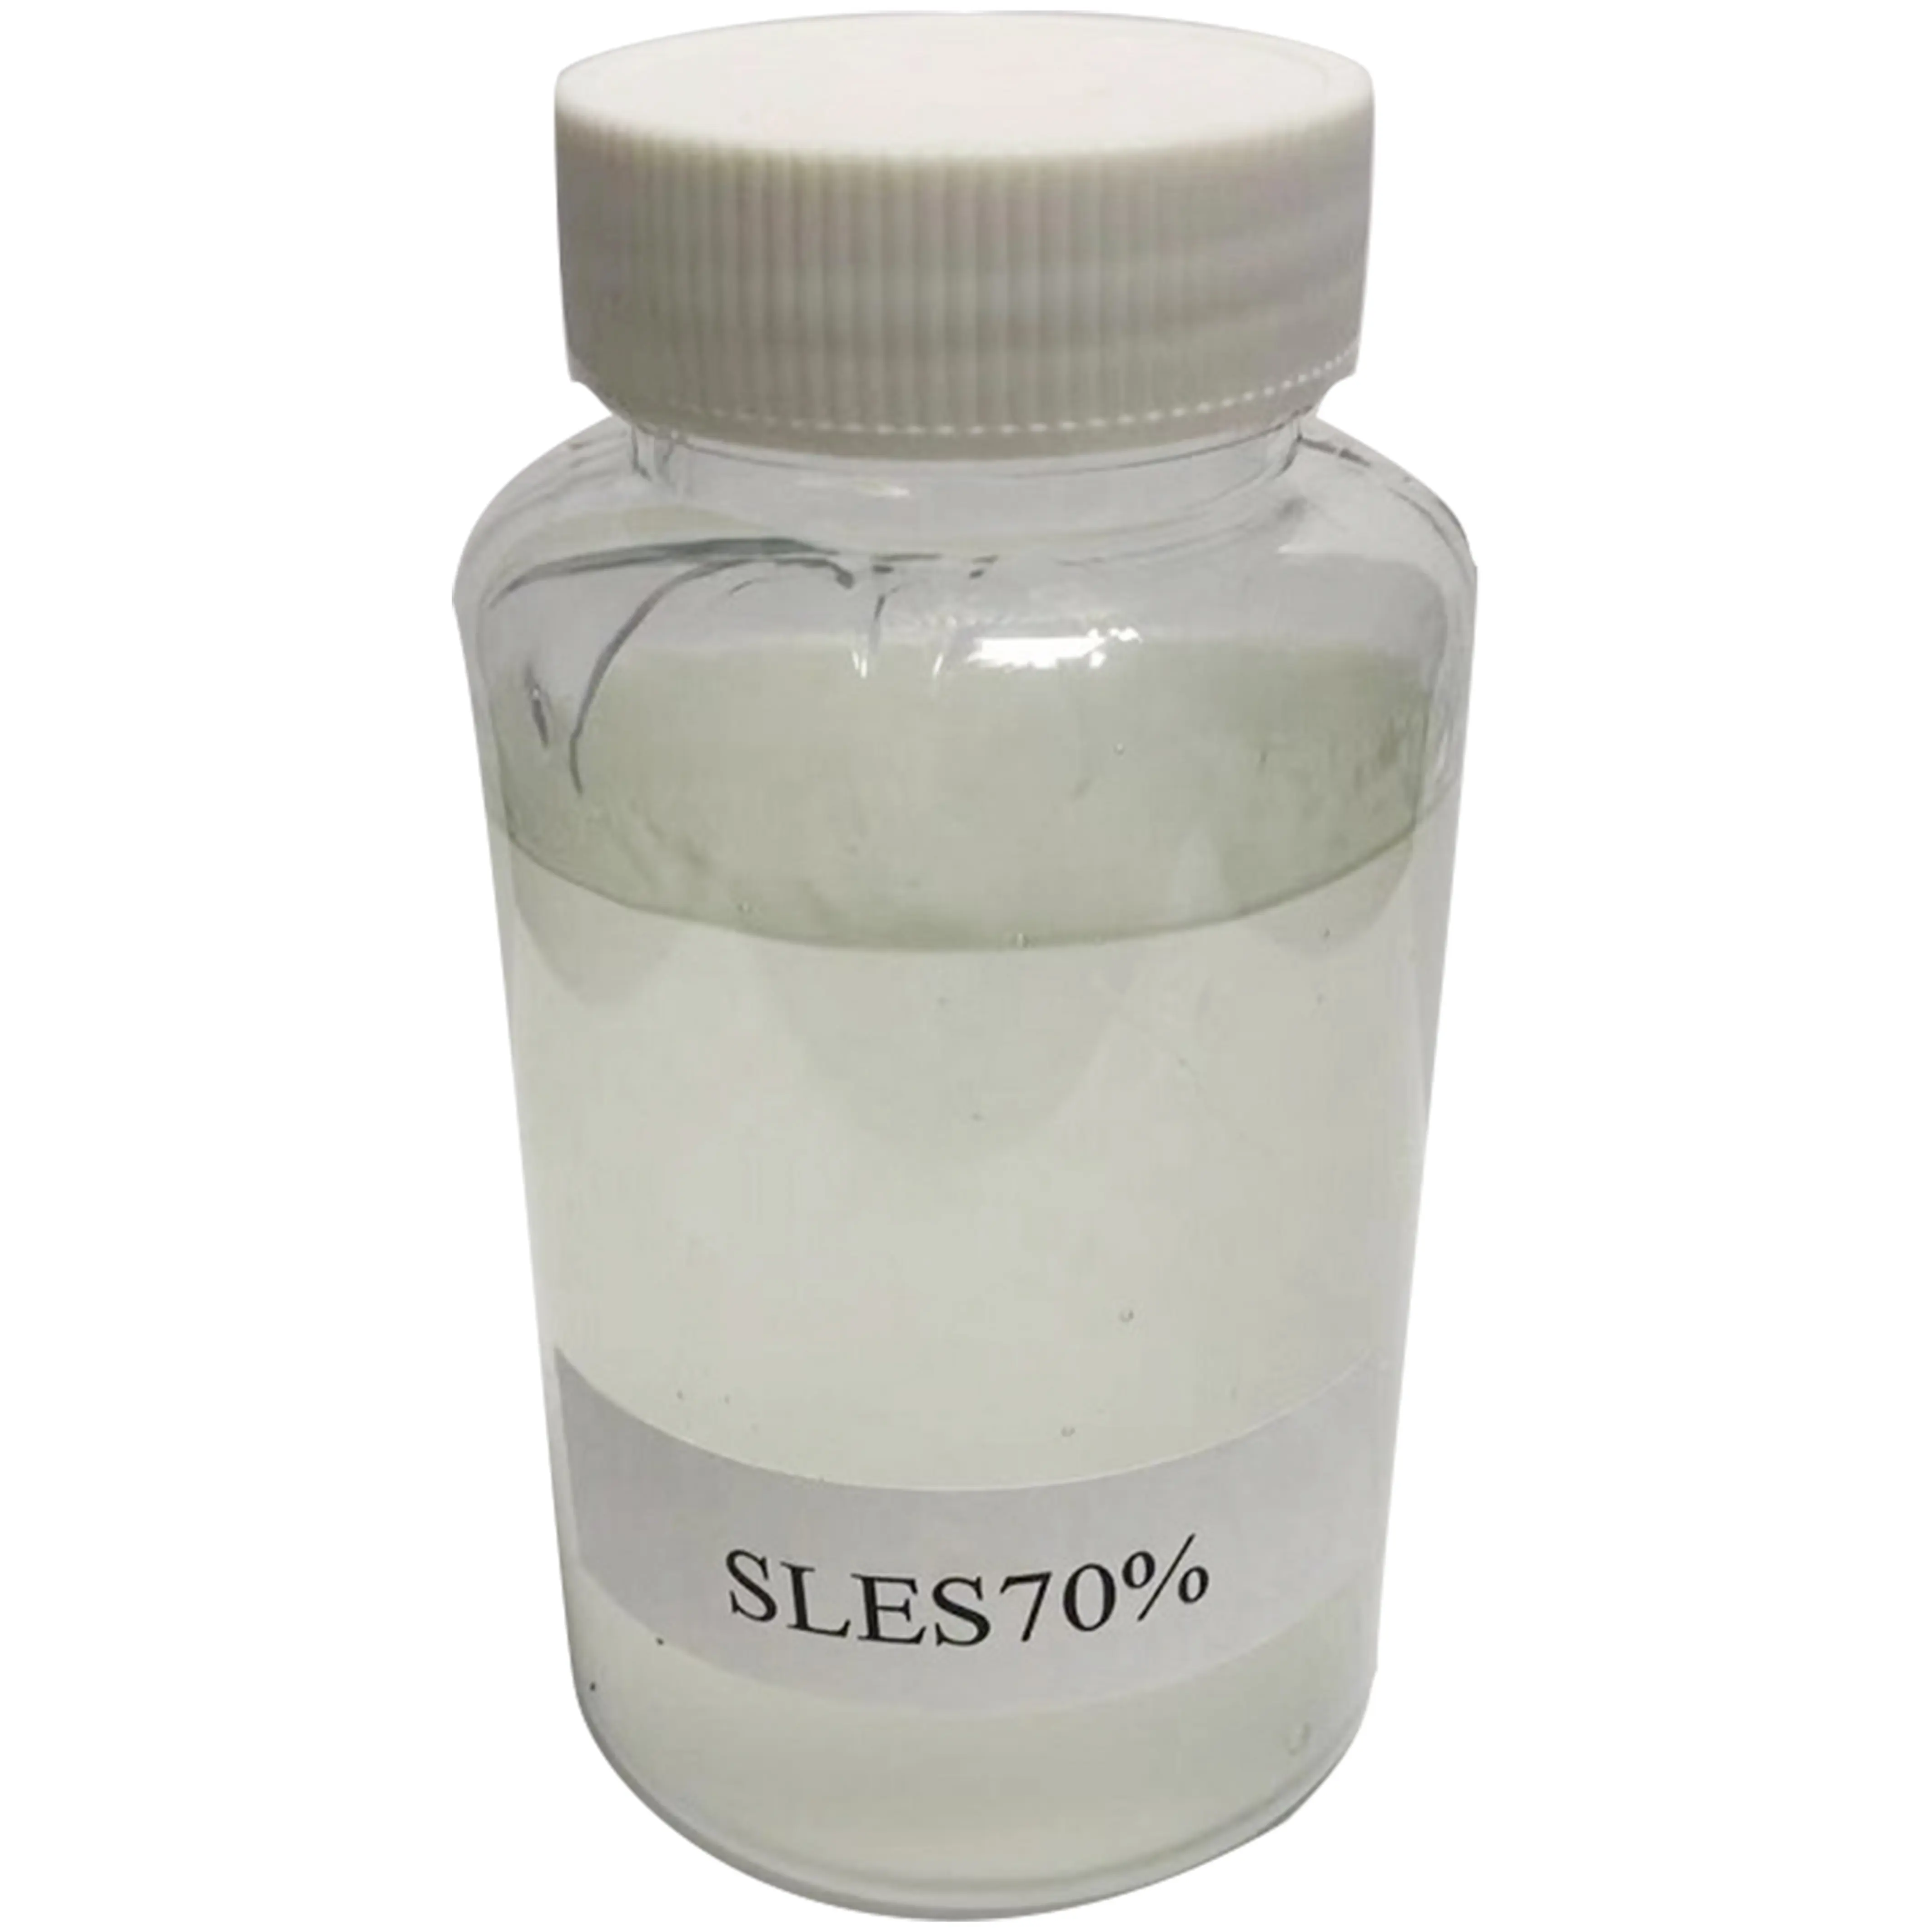 Sabun endüstrisi için deterjan çözücü sodyum lauril eter sülfat SLES 70 Cas 68585-34-2